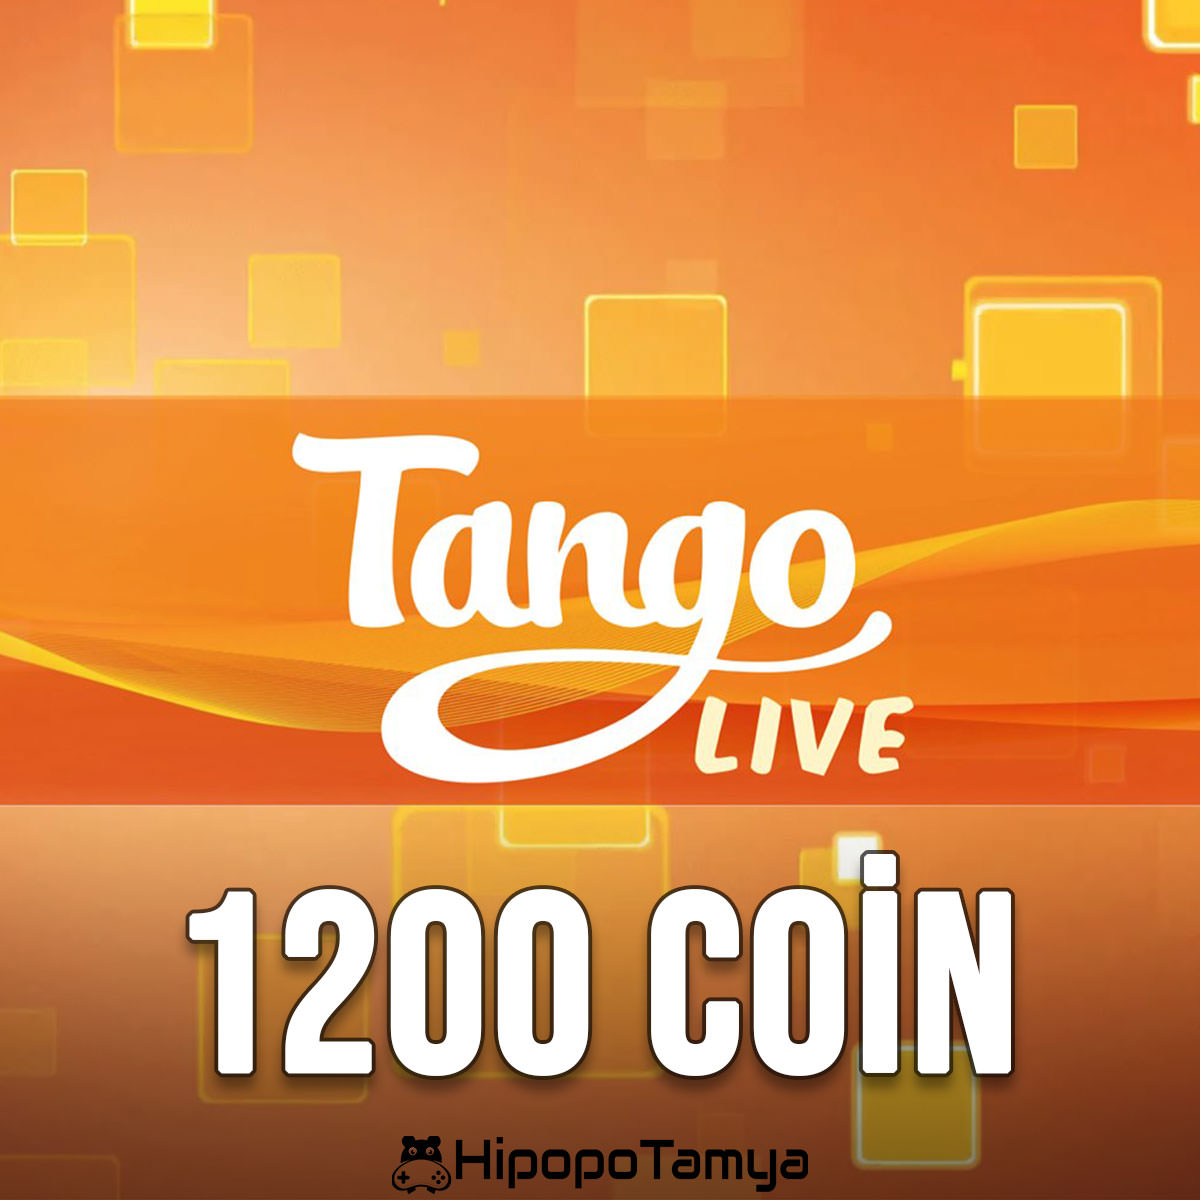 Tango Live 1200 Coin